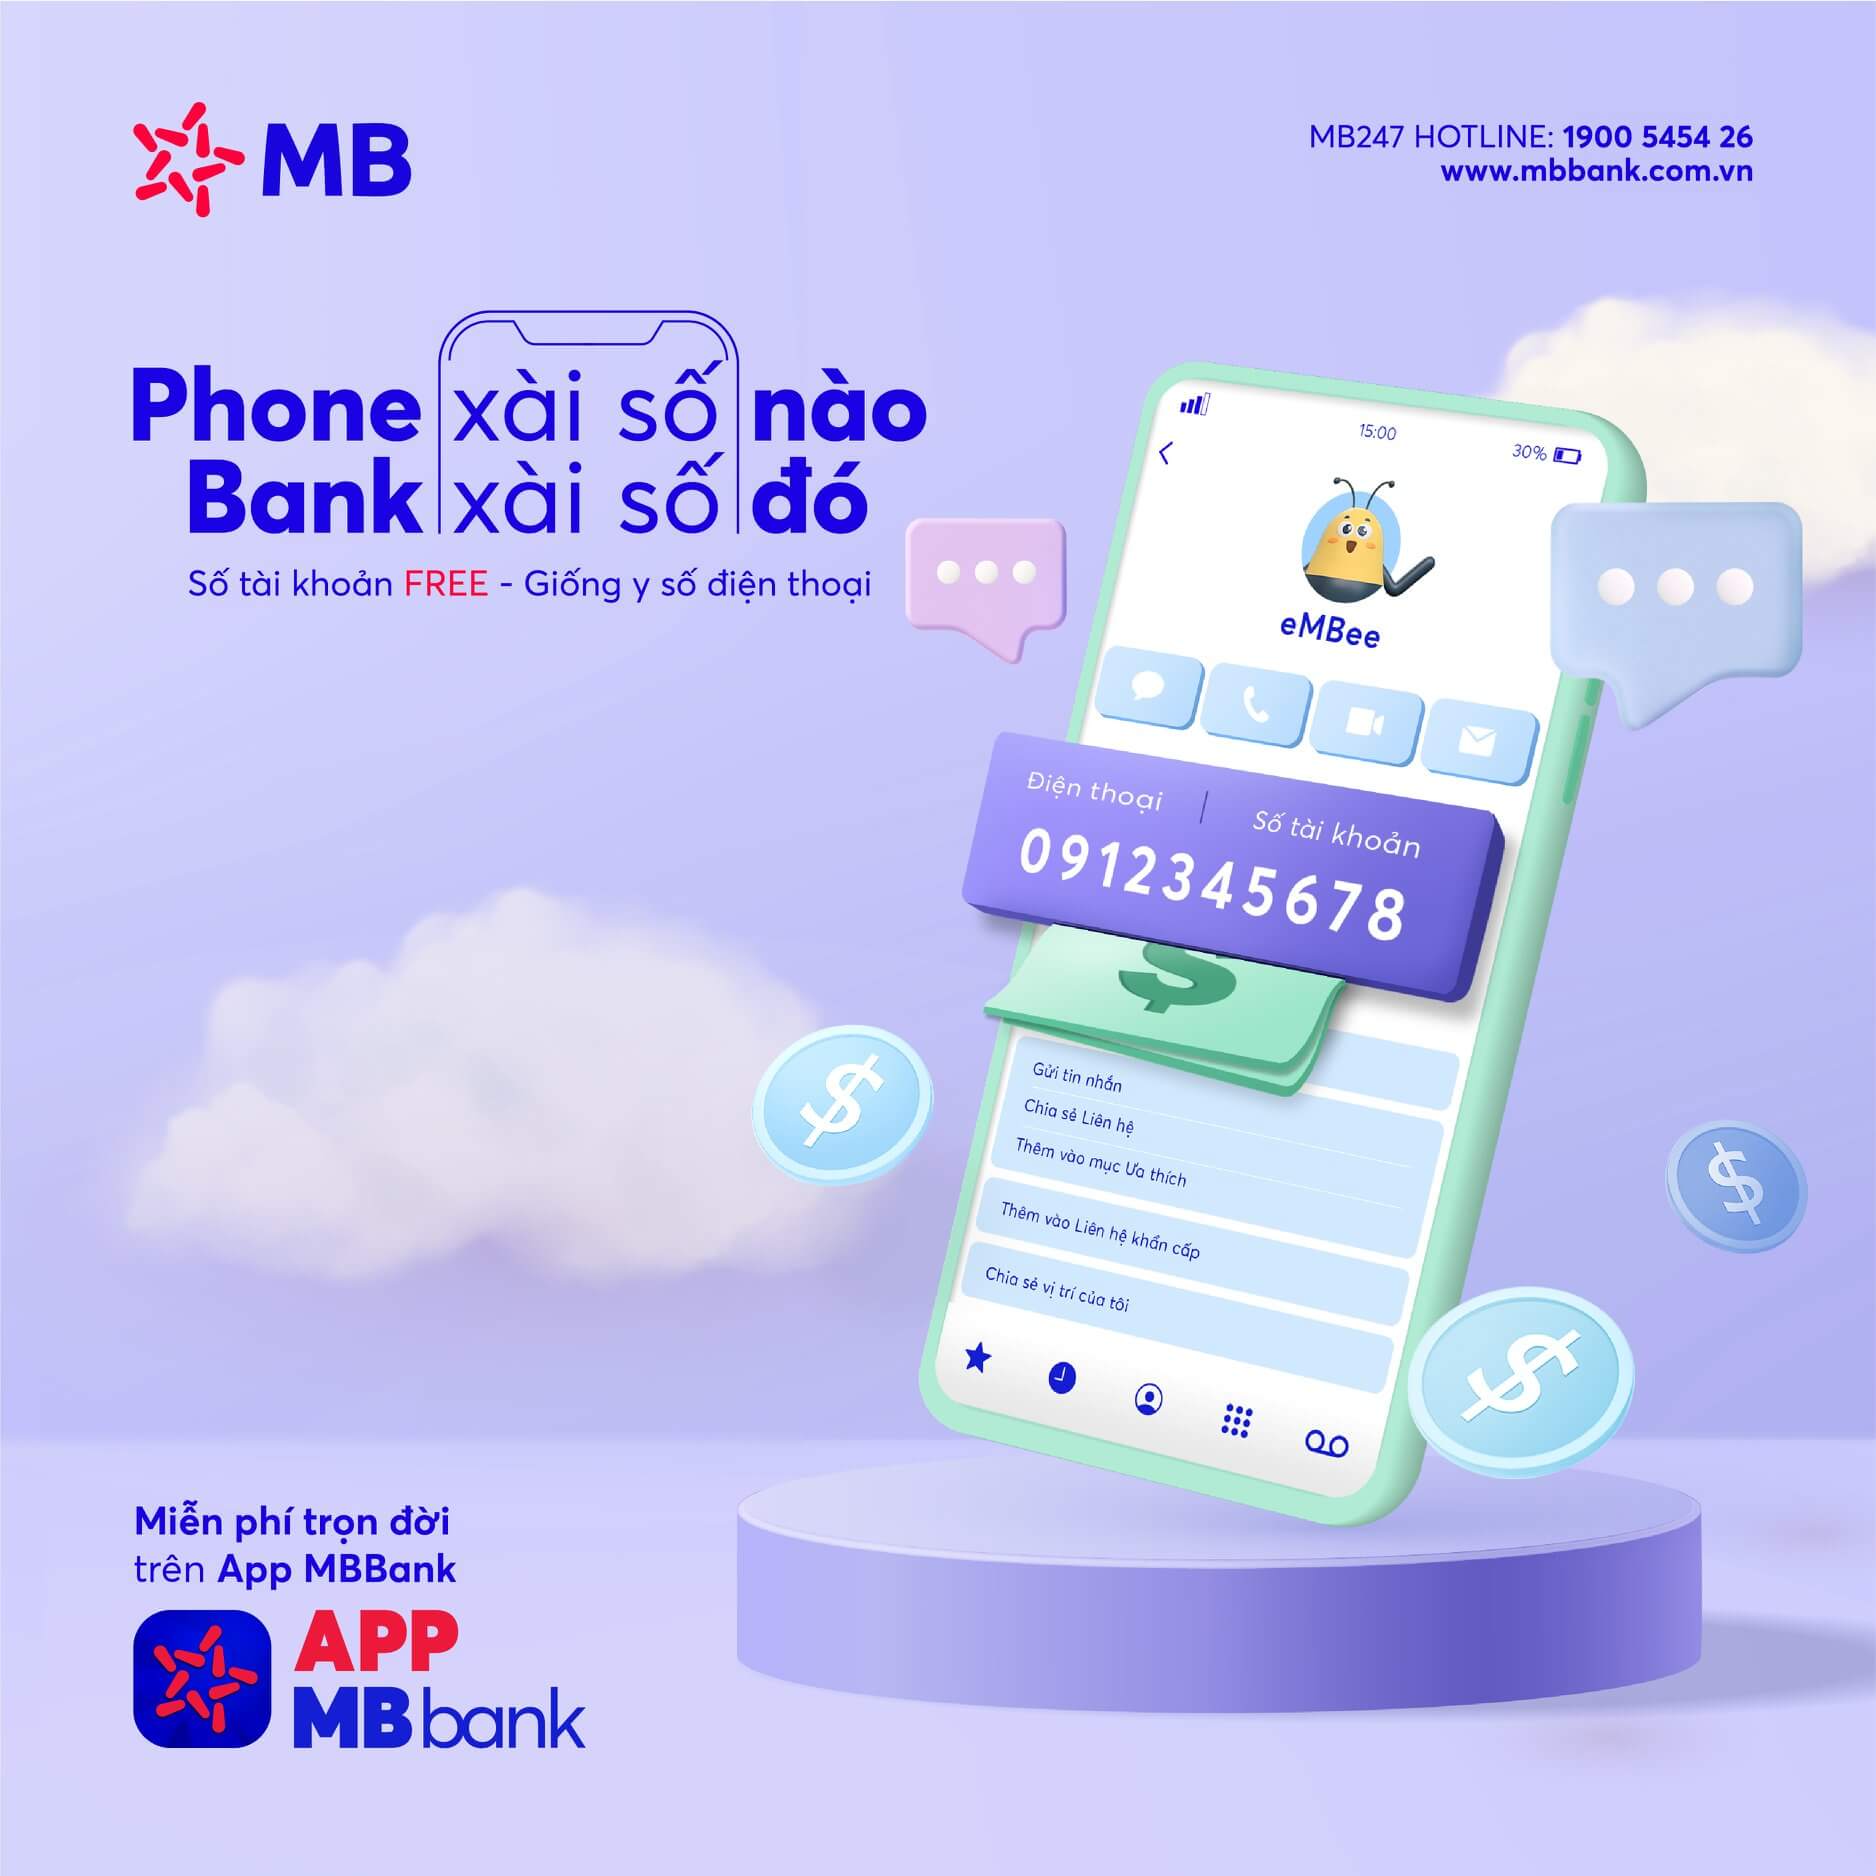 đổi số điện thoại trên app MB Bank bao nhiêu lần